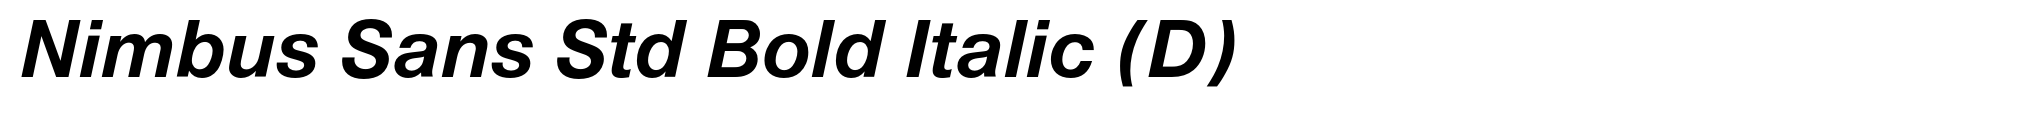 Nimbus Sans Std Bold Italic (D) image